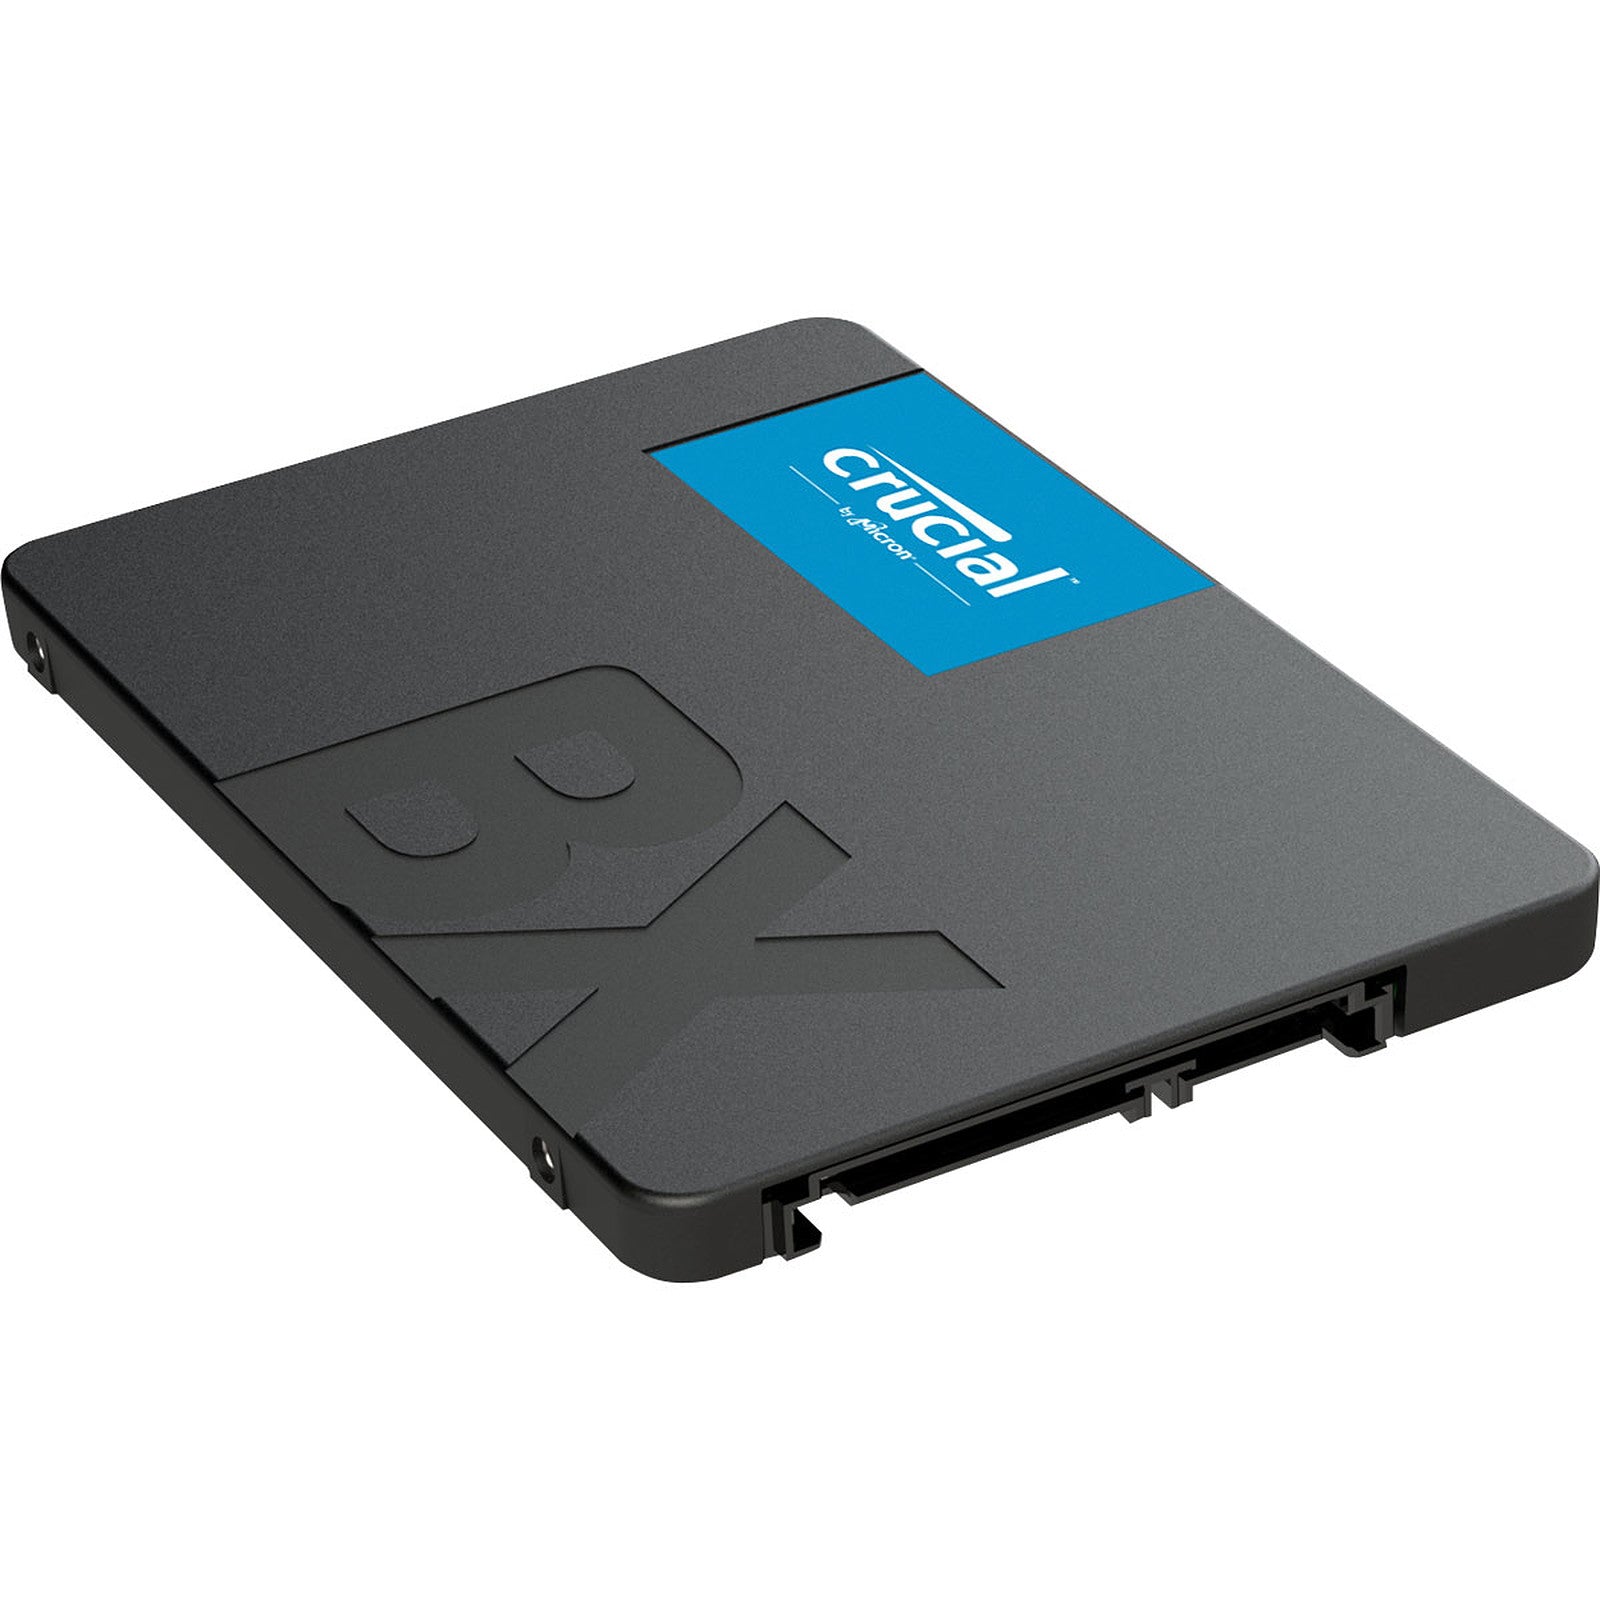 DISQUE SSD CRUCIAL BX500 480GB "2.5" SATA3